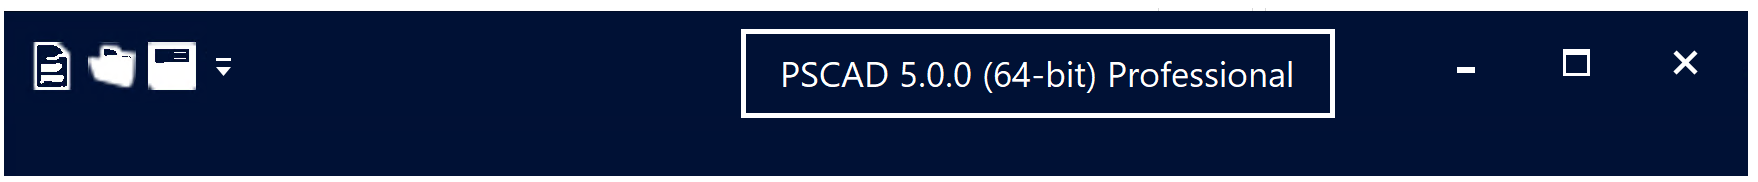 PSCAD V5 Application - Licensed.png (25 KB)